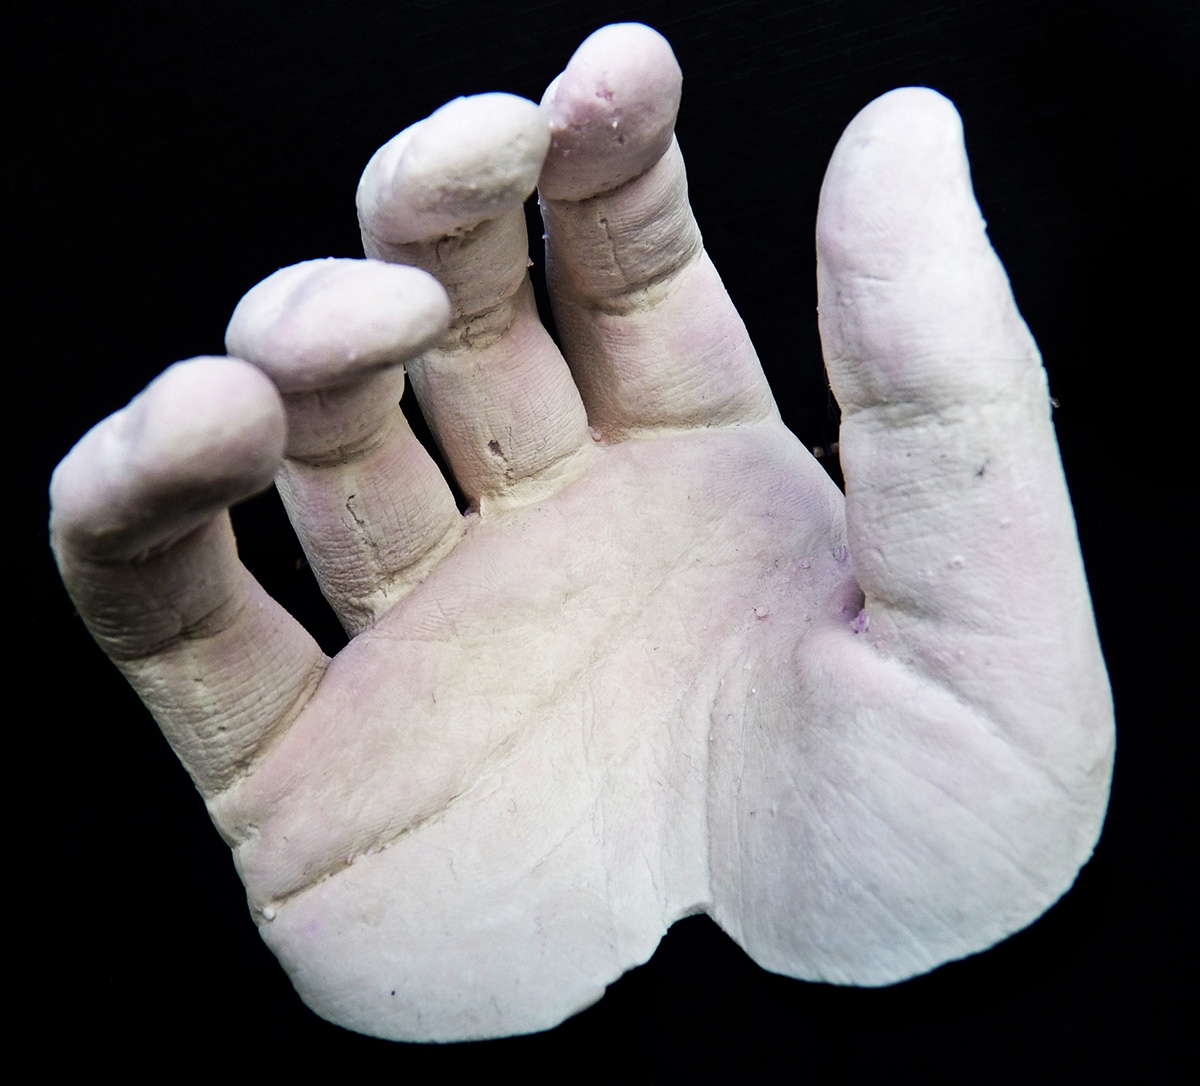 sculpture hands casting life casts Life Casting